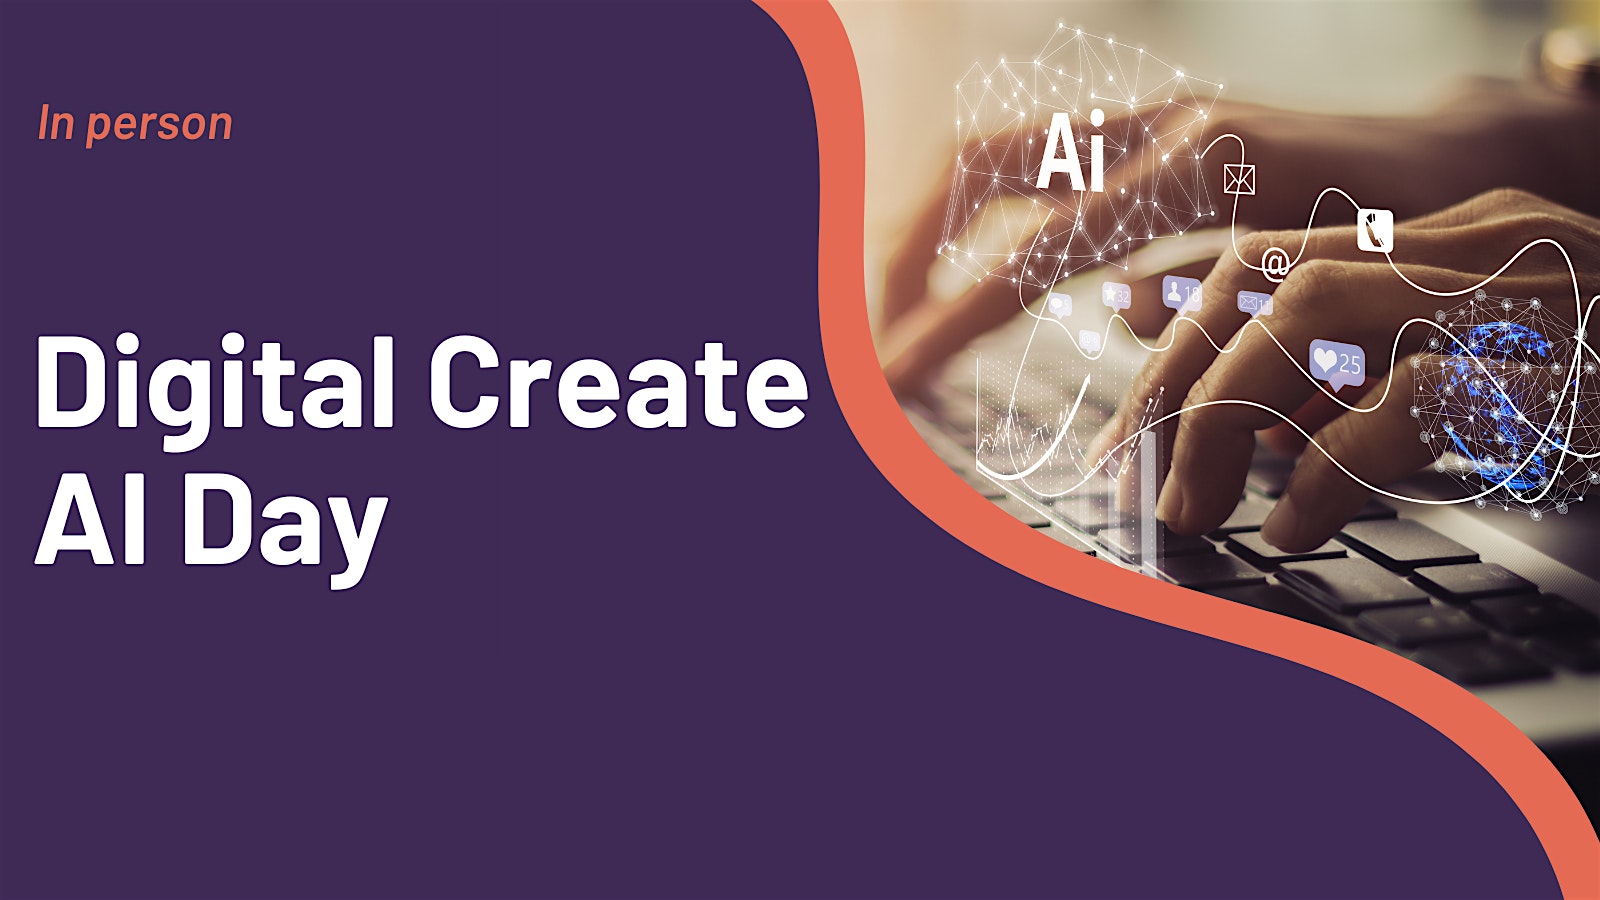 Digital Create AI Day image